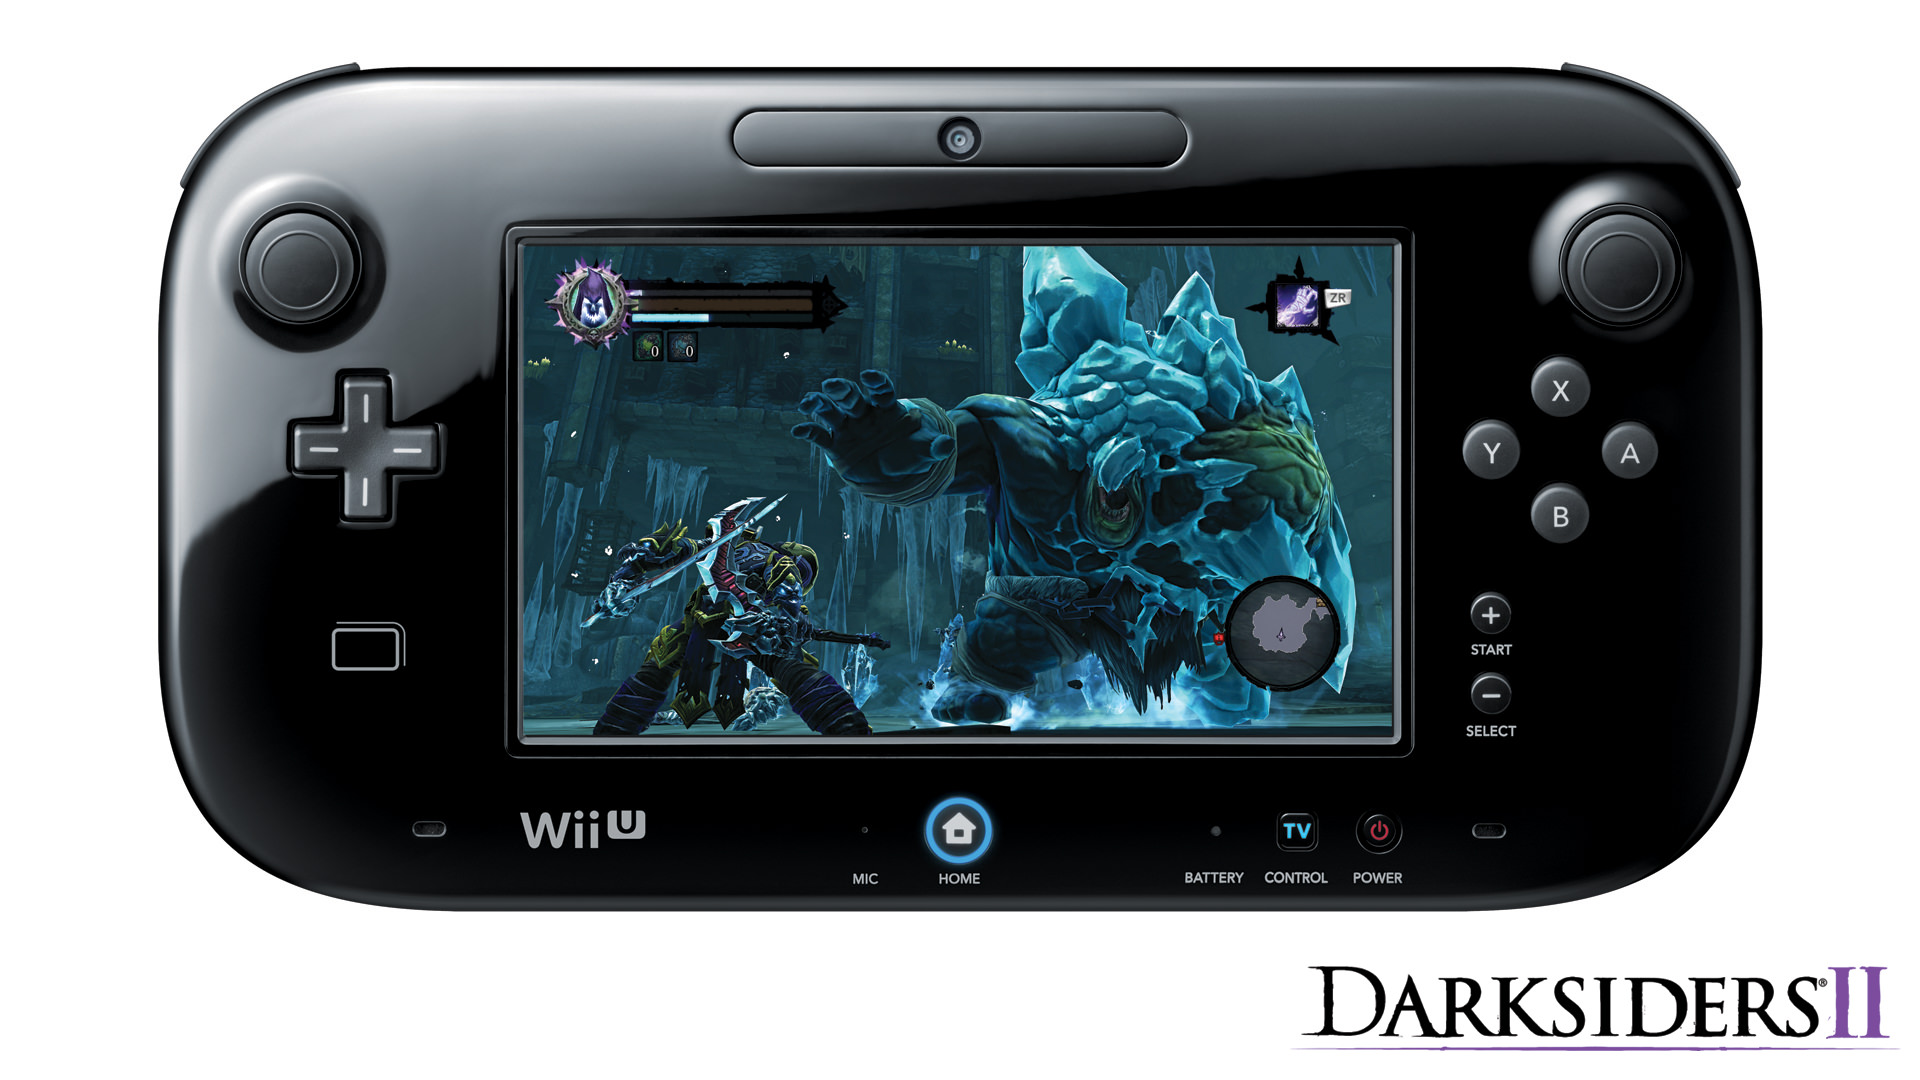 Darksiders_II_WiiU_GamePad_Only_Mode.jpg